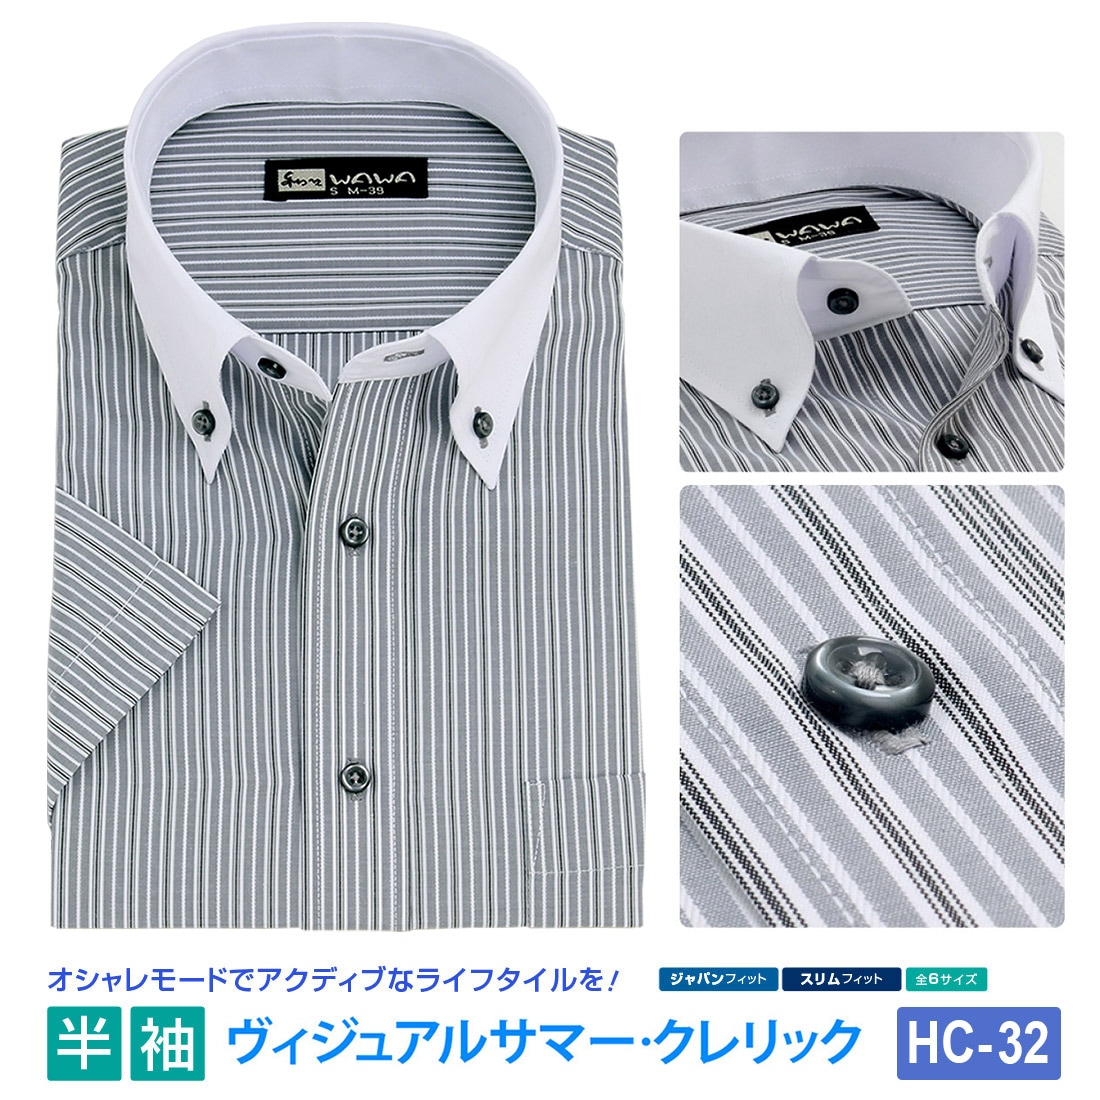 半袖 メンズ クレリック ワイシャツ ボタンダウン グレーボーダー 形態安定 Yシャツ ビジネス 6サイズ スリム M L 標準体 M L LL 3L  から選べる HC-32-WAWAJAPAN